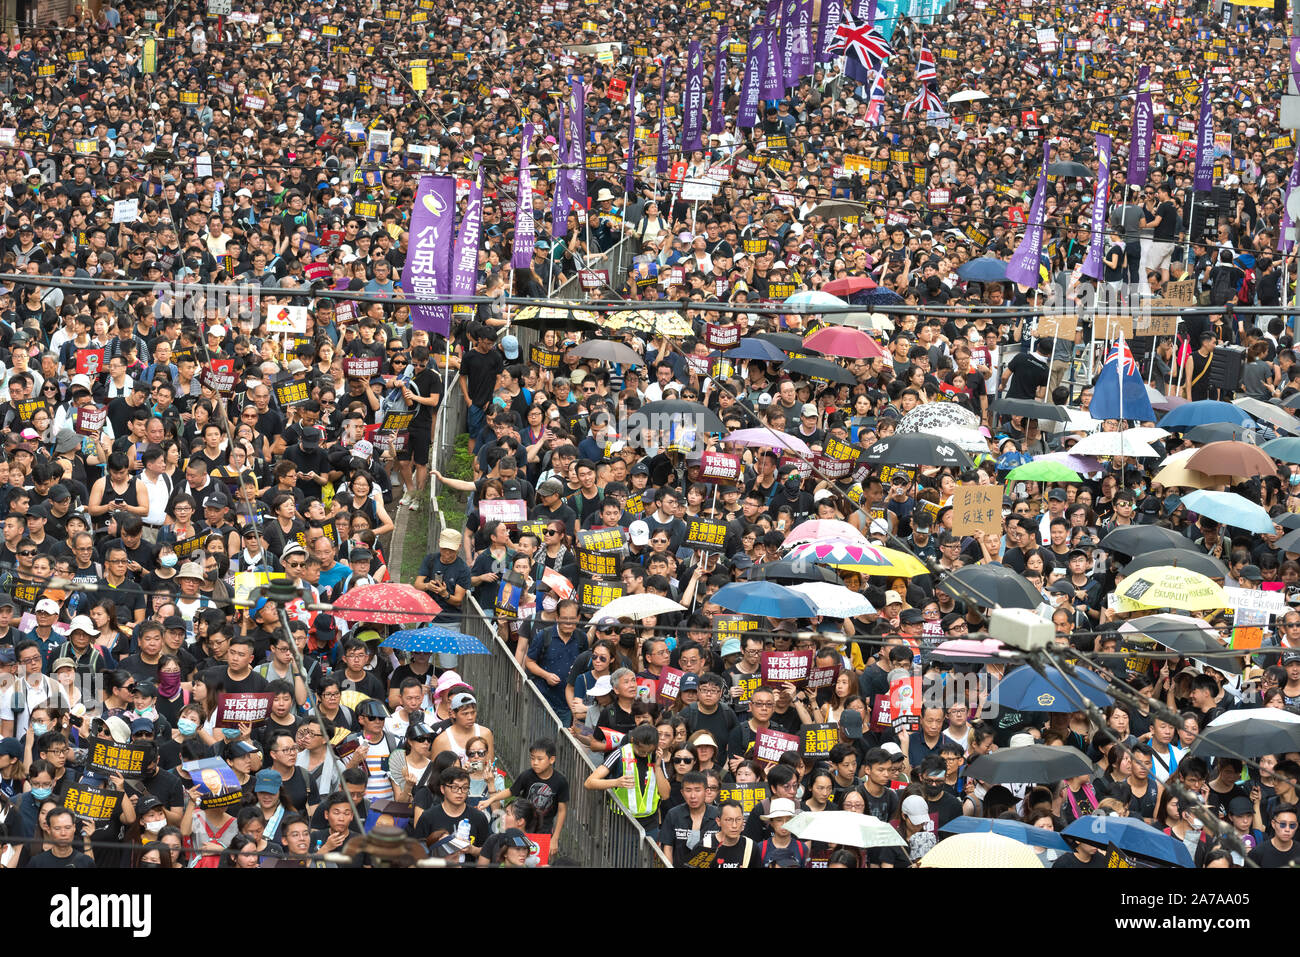 Les gens protestent dans la rue à hong kong, Chine. Plus de 100 000 manifestants sont descendus dans les rues de Hong Kong. Banque D'Images